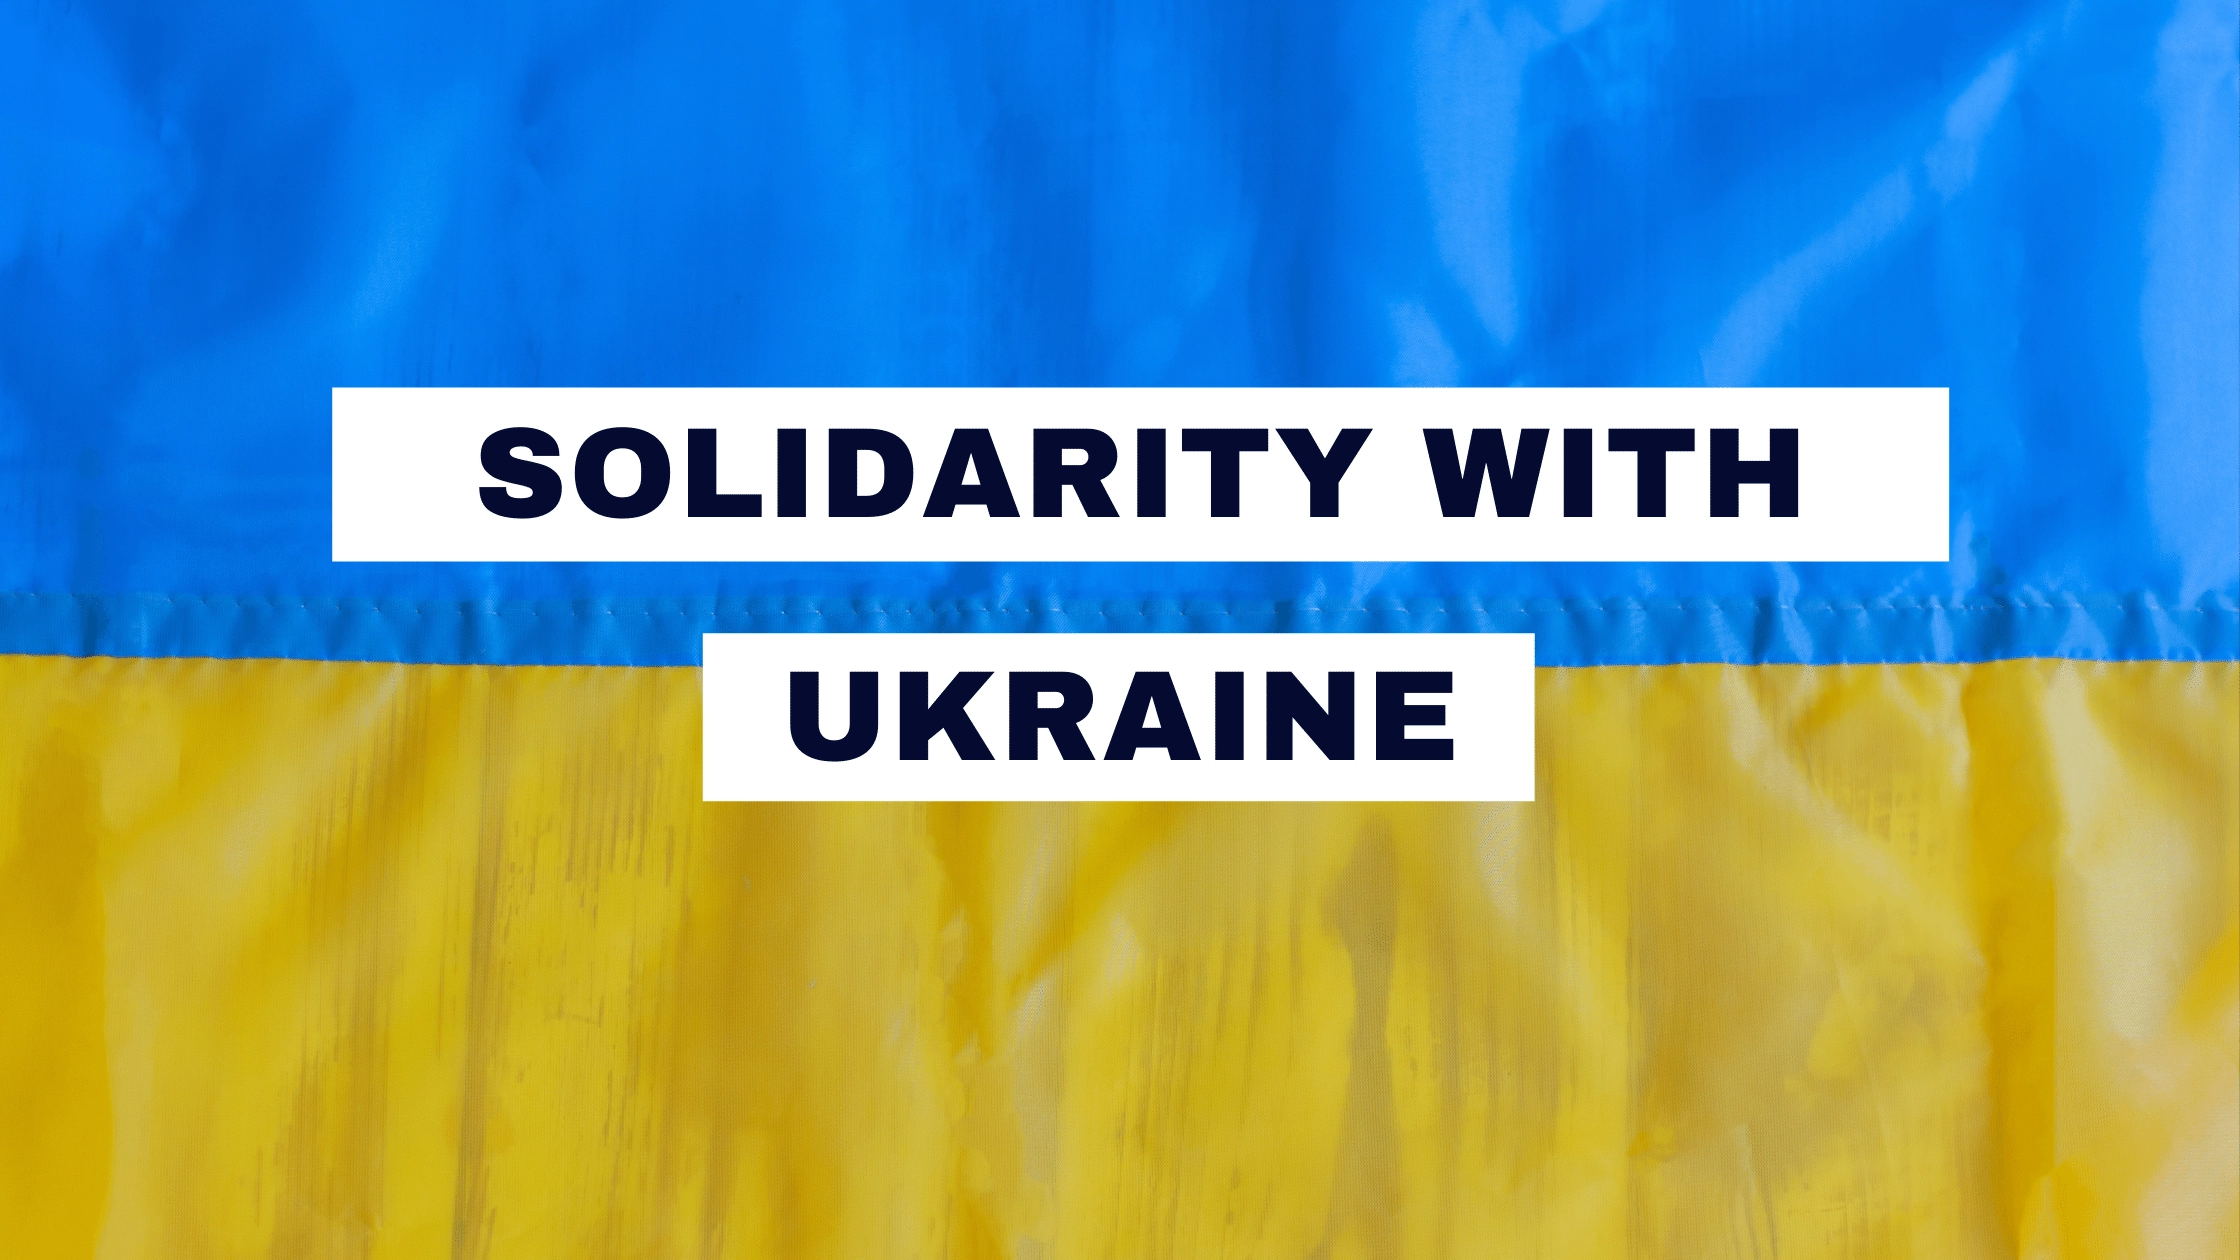 Solidarity with Ukraine webp image